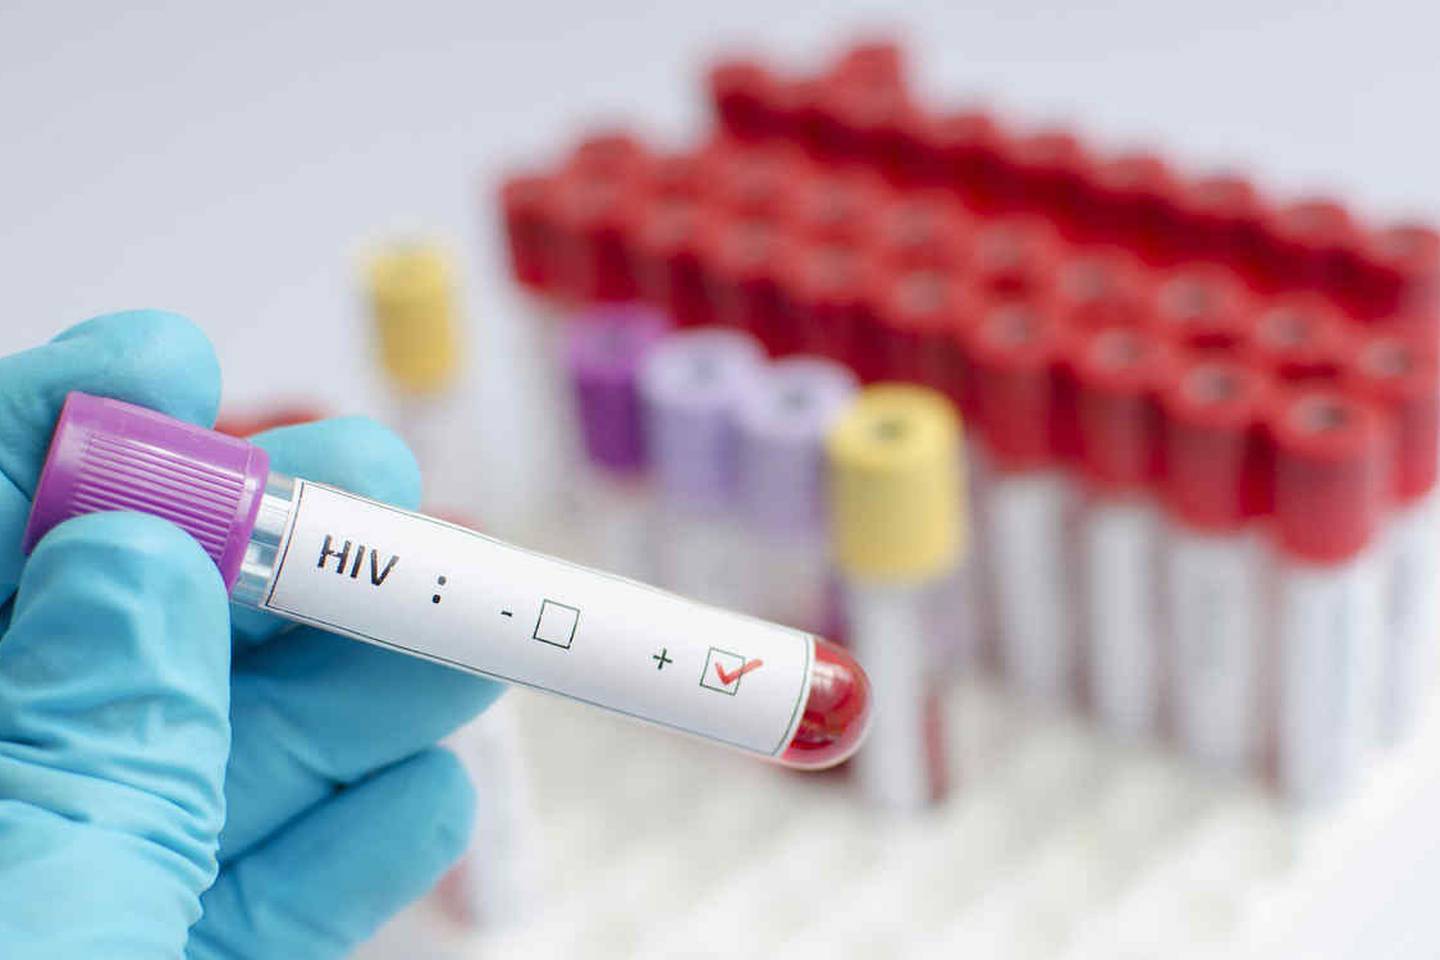 La estadística señala que una de cada siete personas desconoce que es portador del VIH y eso provoca una cadena de contagios que es la que se pretende frenar.